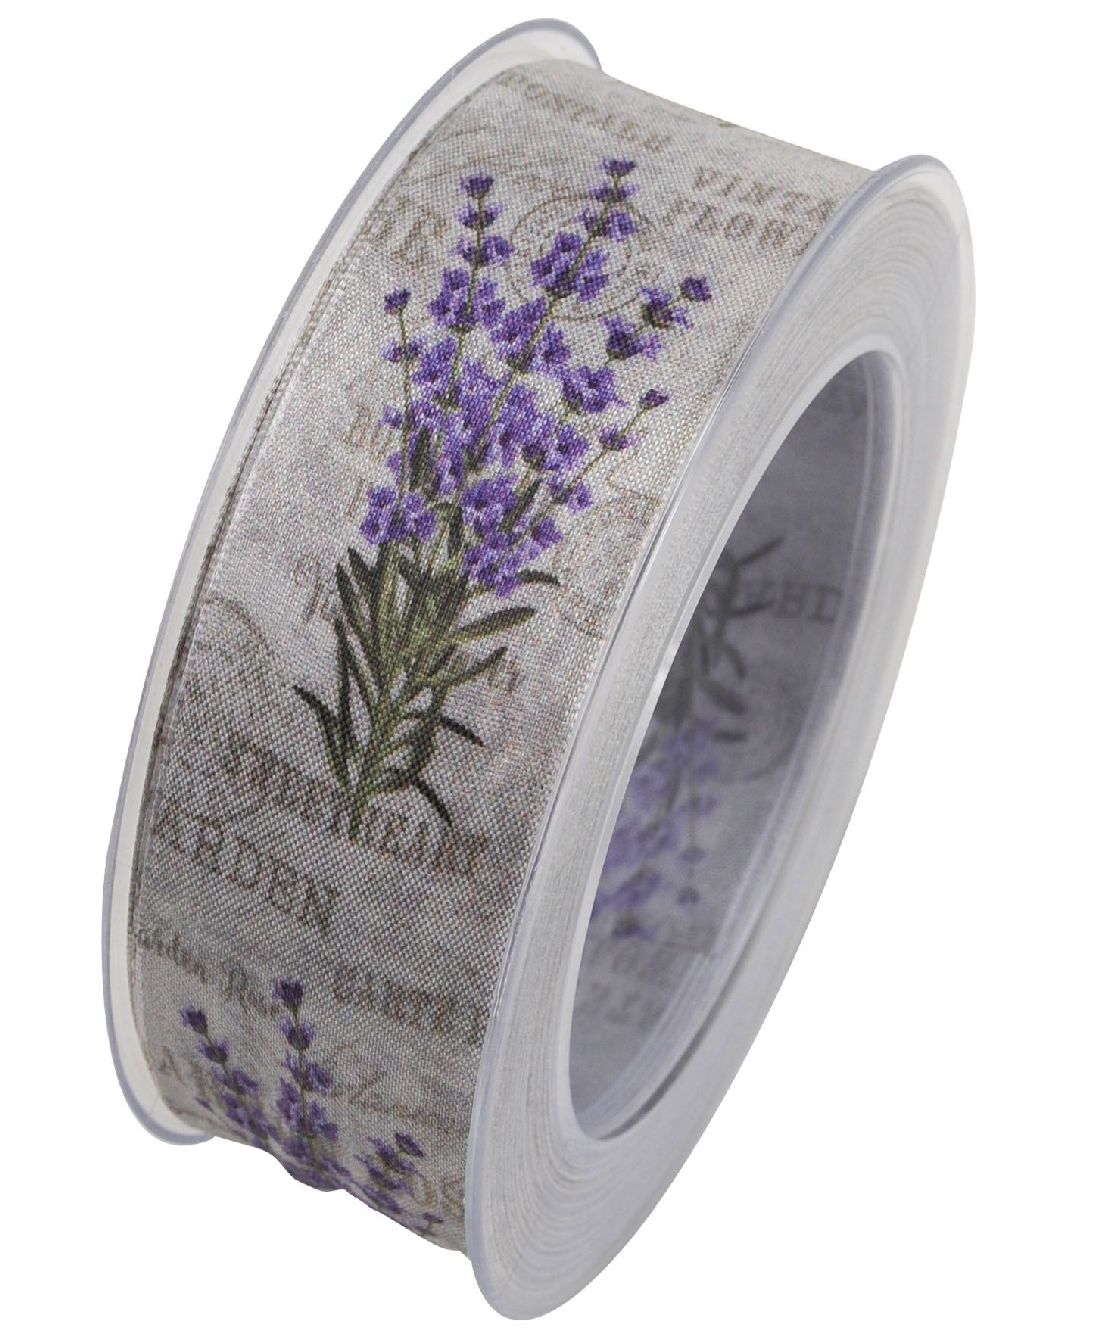 Band Lavendel Vintage Flower LAVENDEL X769 formstab.Kante B:40mm L:20Meter Garden